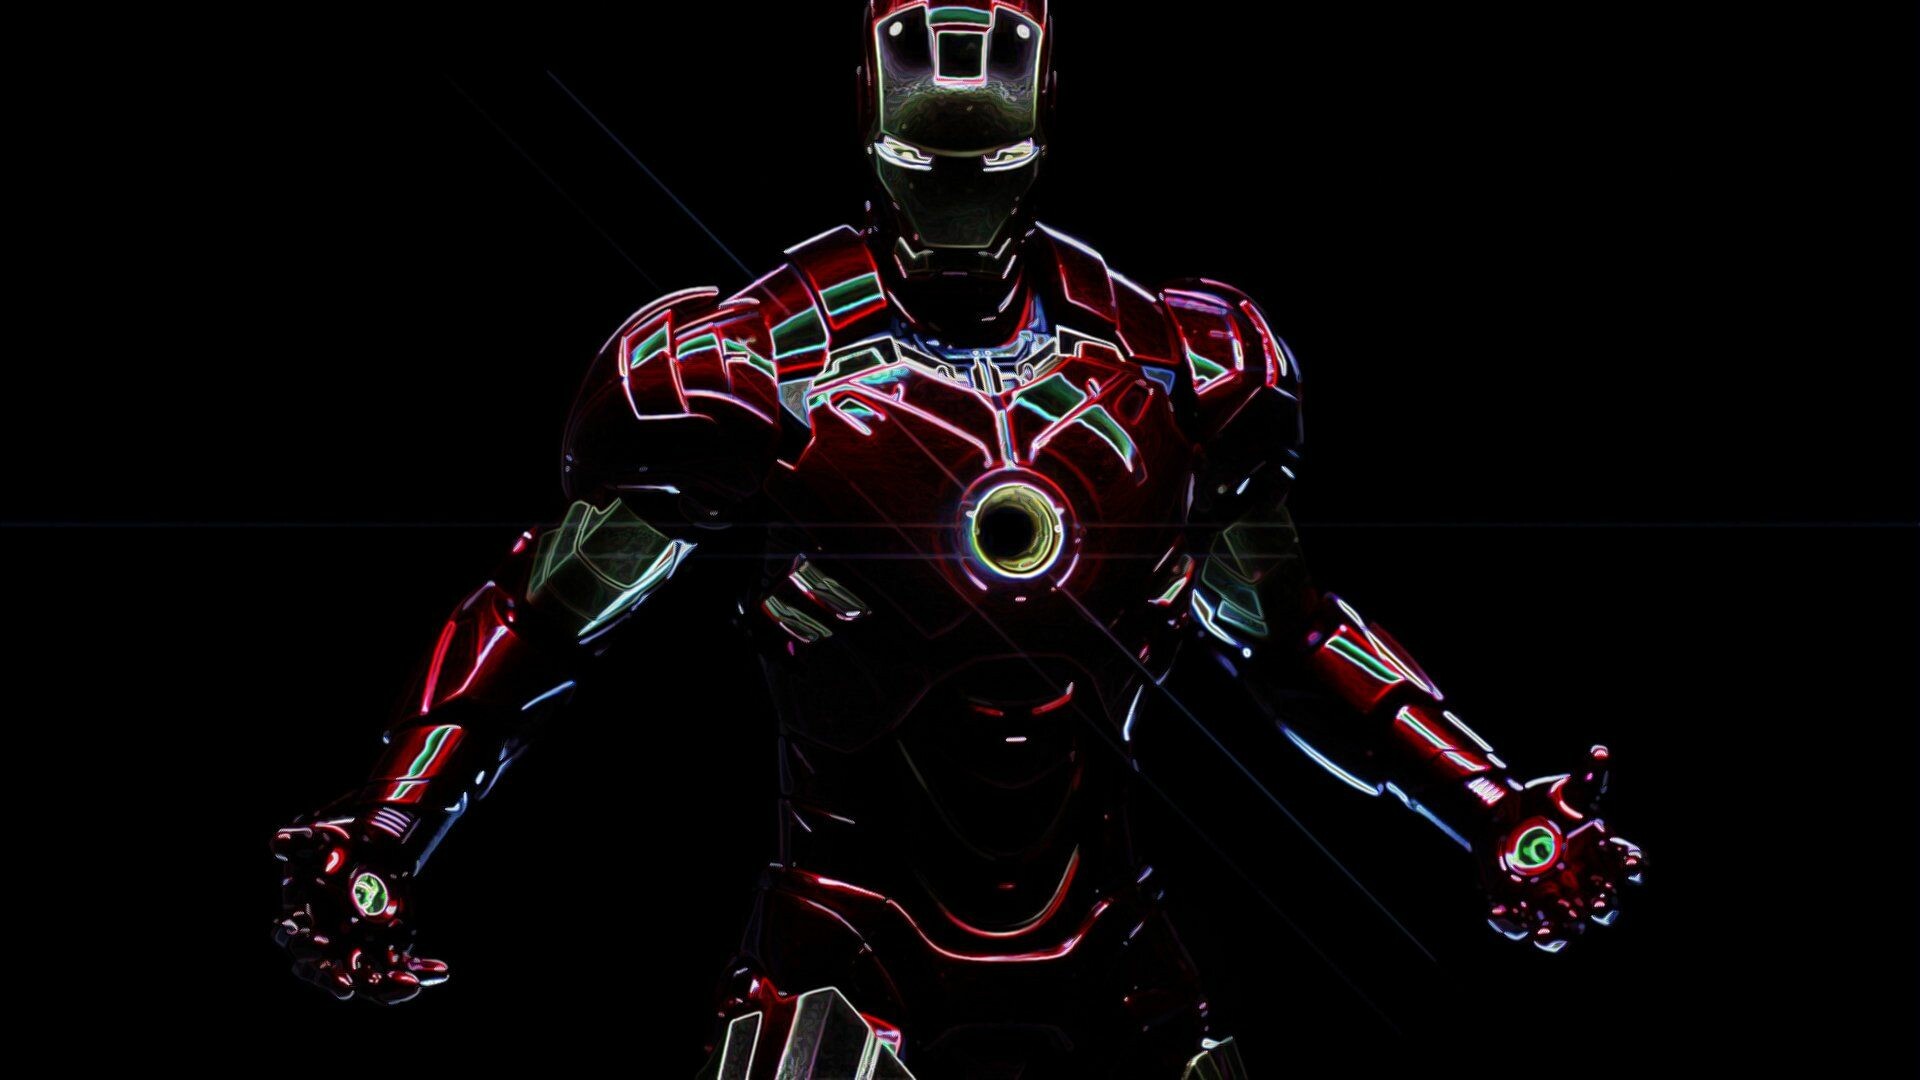 Hình nền iron man 4k: Hãy ngắm nhìn hình nền Iron Man 4K đầy sắc màu và sống động đến ngỡ ngàng. Với chất lượng hình ảnh hoàn hảo, bạn sẽ được đắm chìm trong thế giới siêu anh hùng đầy đam mê này.